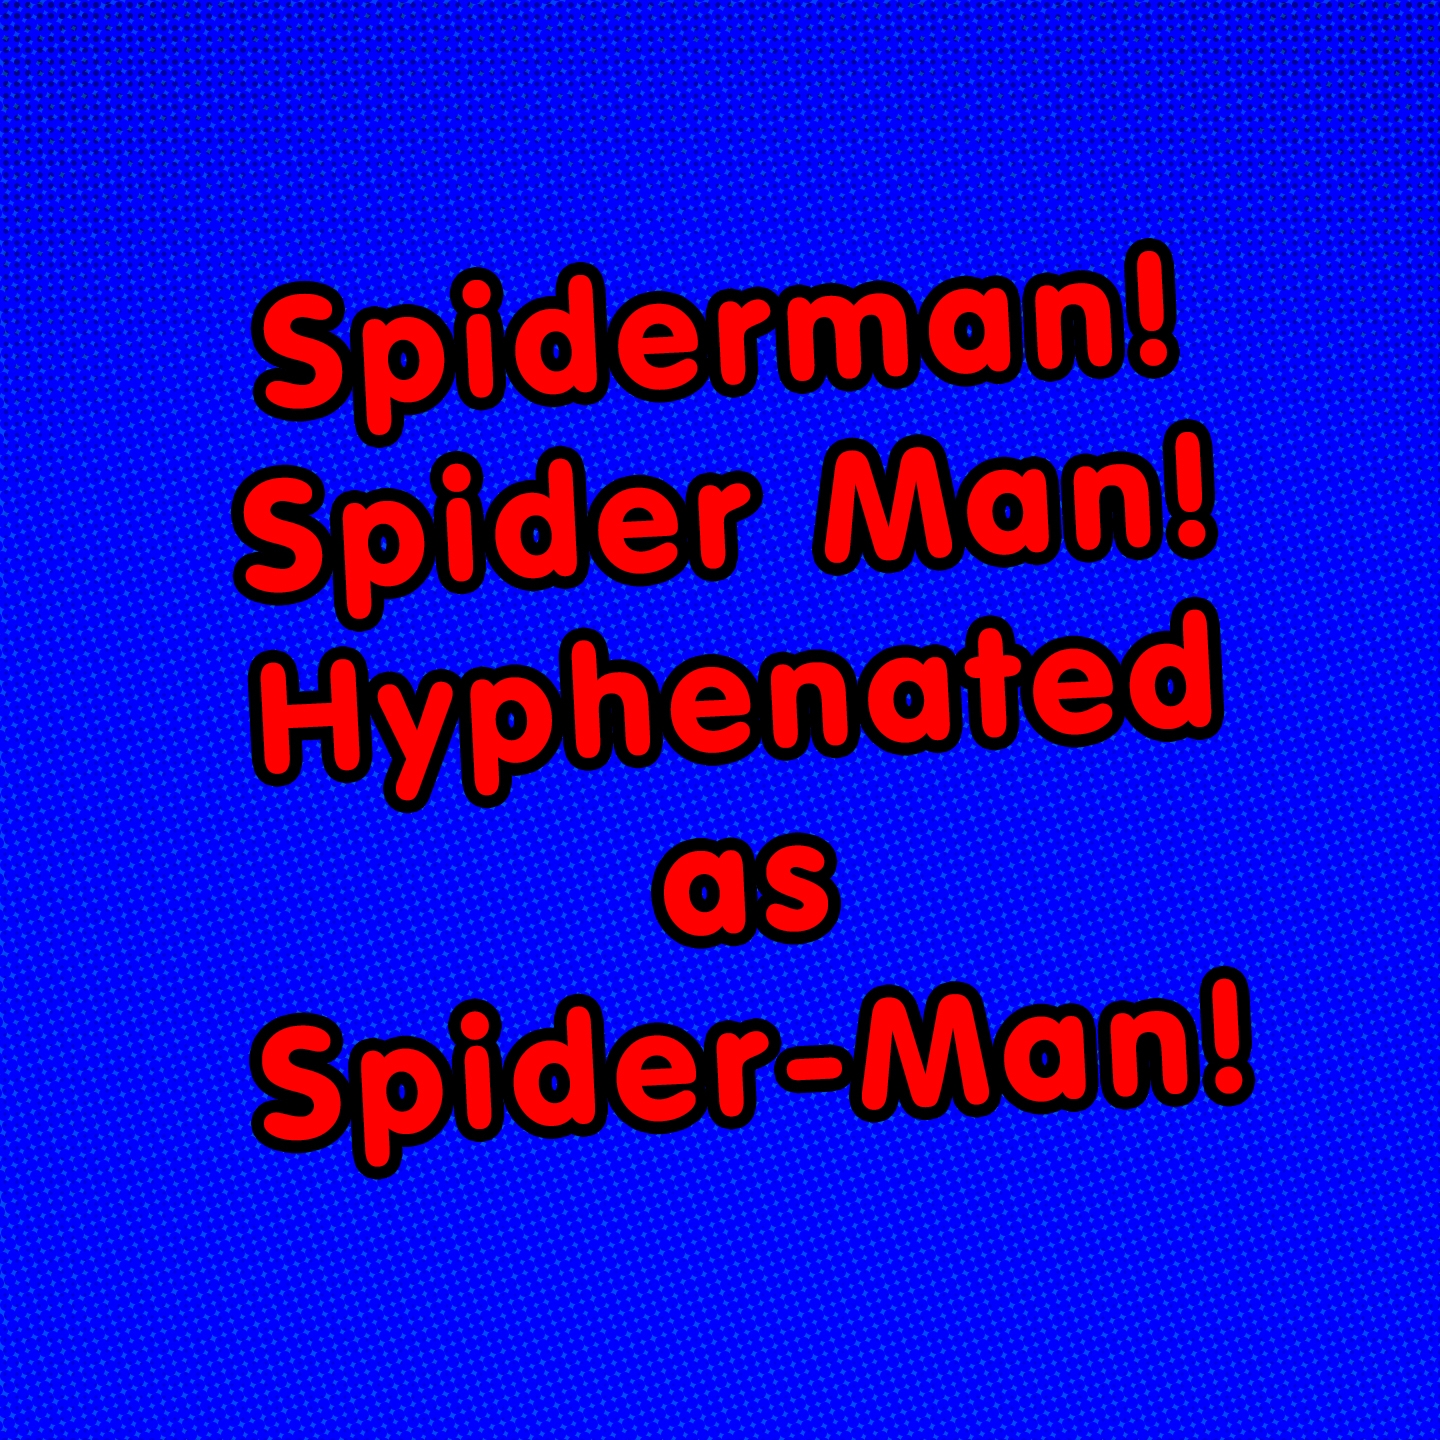 Spiderman! Spider Man! Hyphenated as Spider-Man! (Acapella)